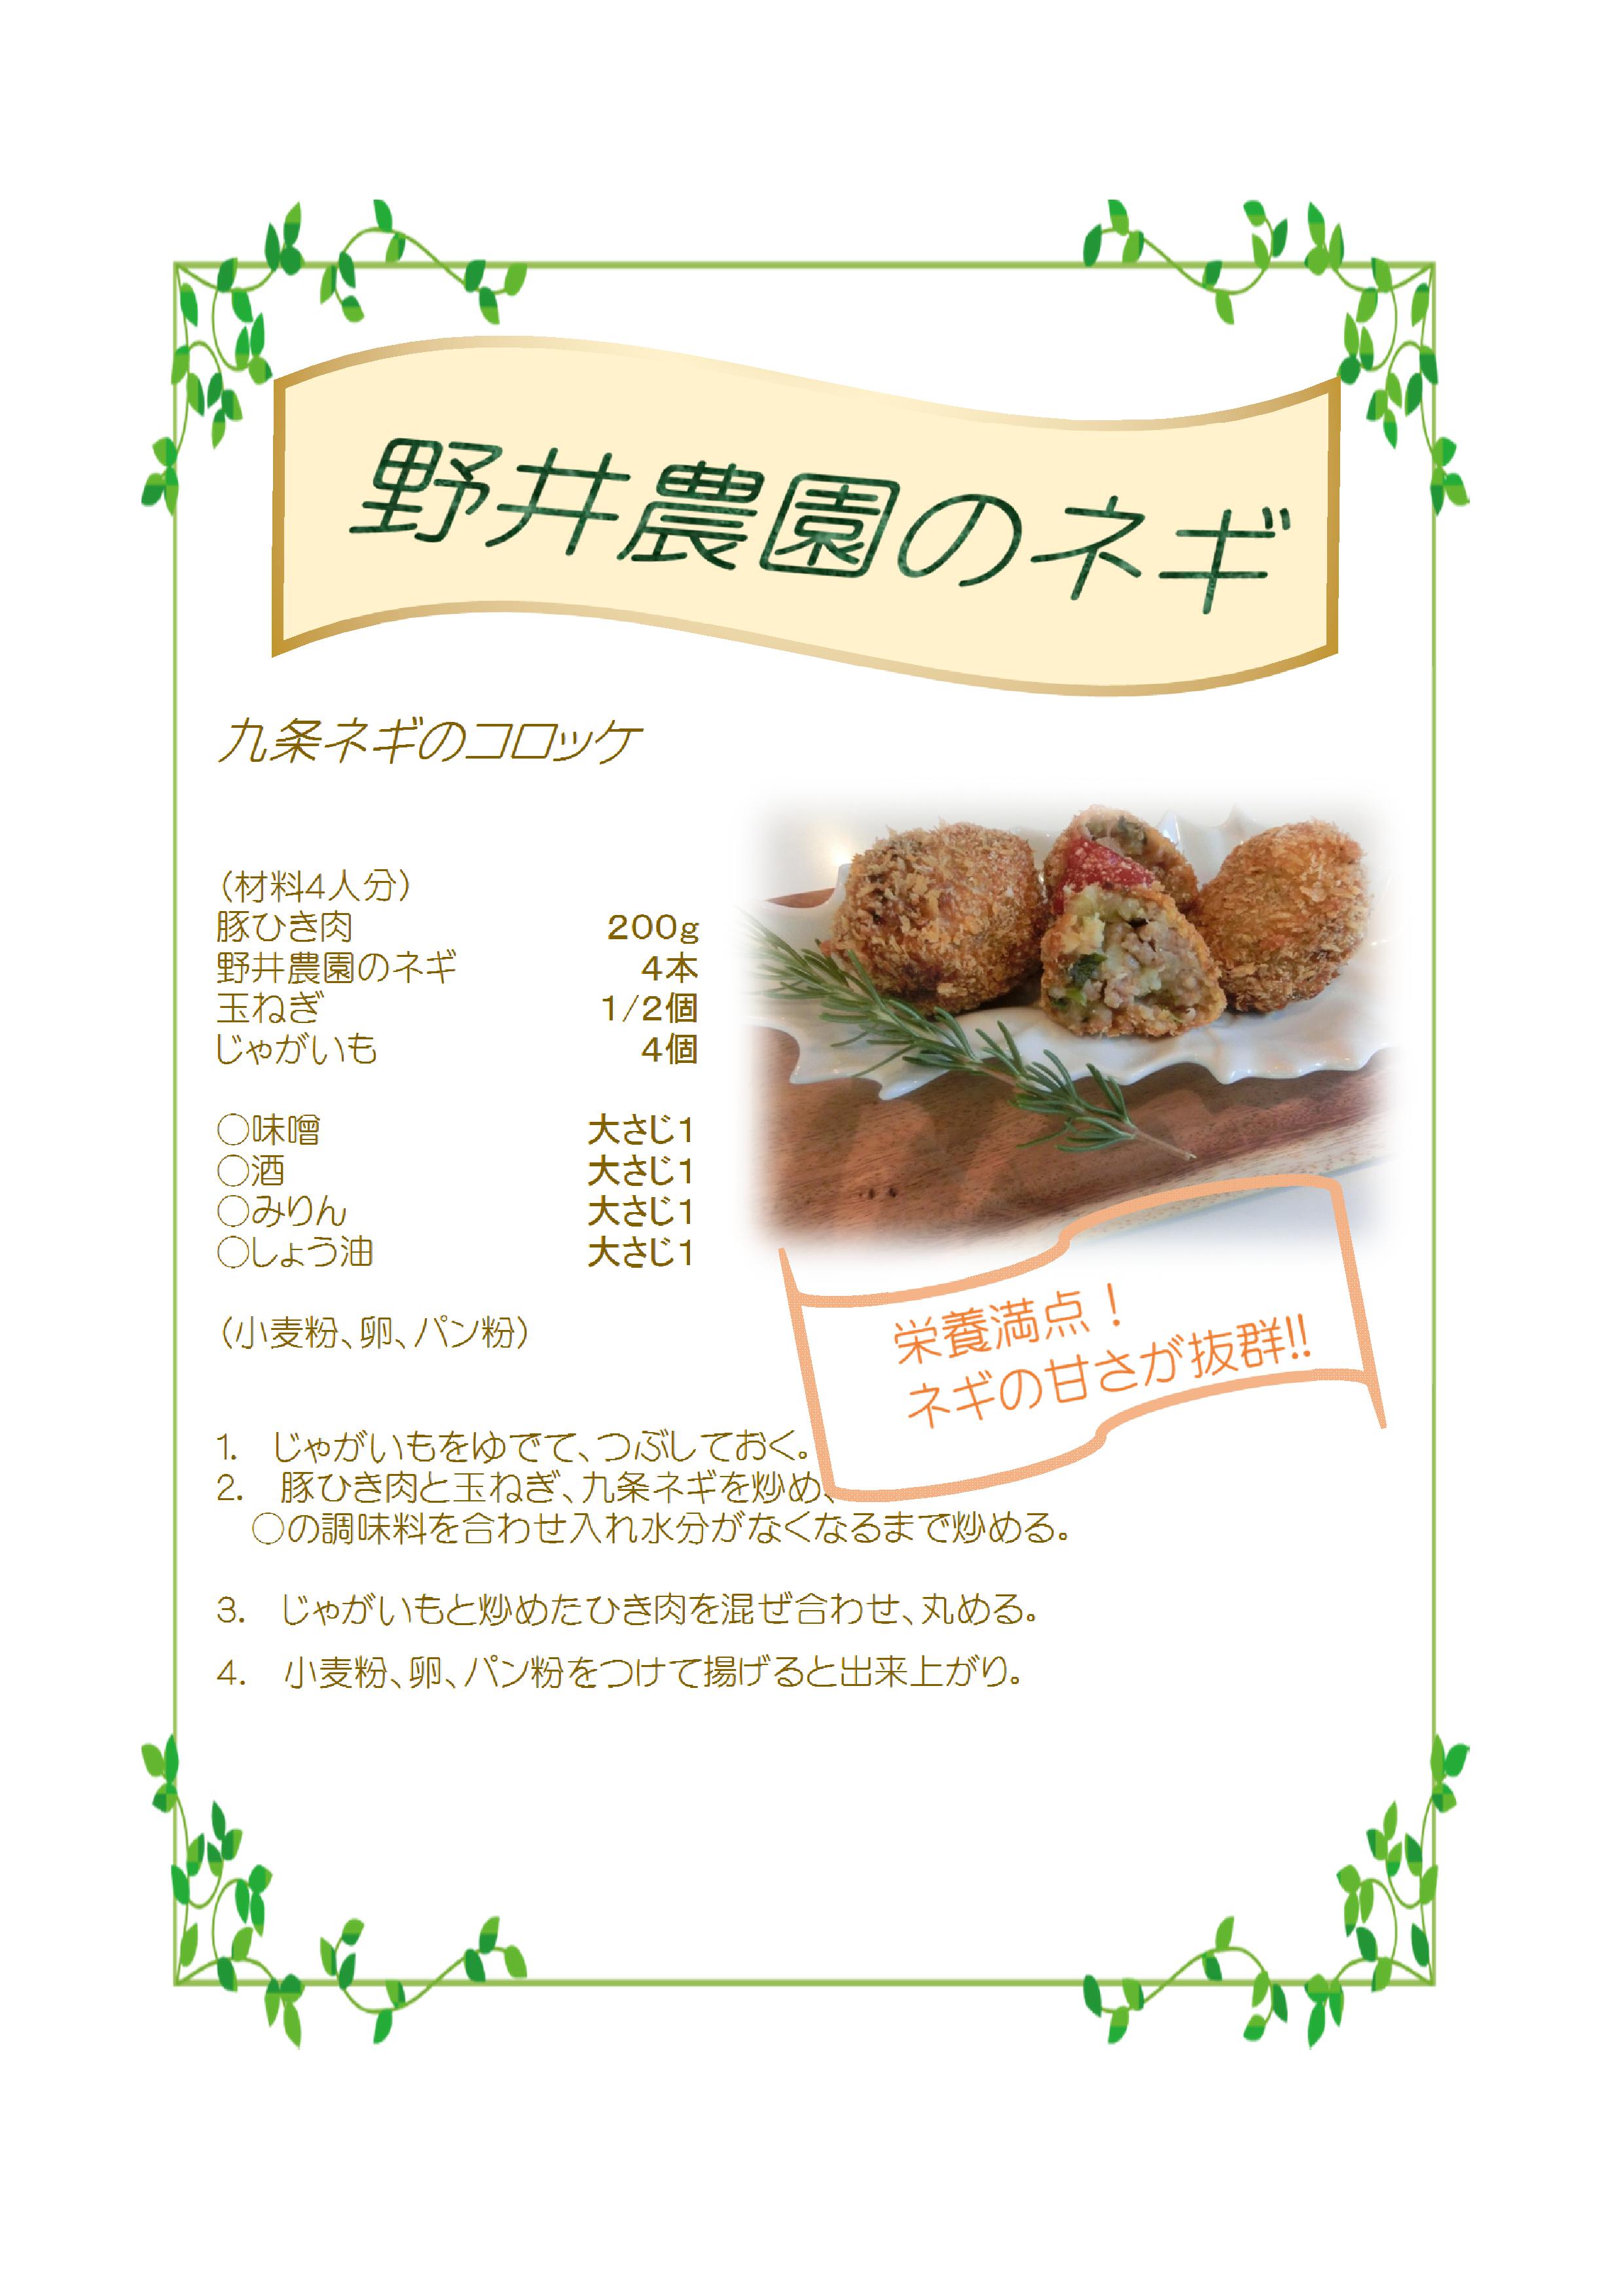 京都 野井農園 九条ねぎ 富山県の食品スーパー サンキュー